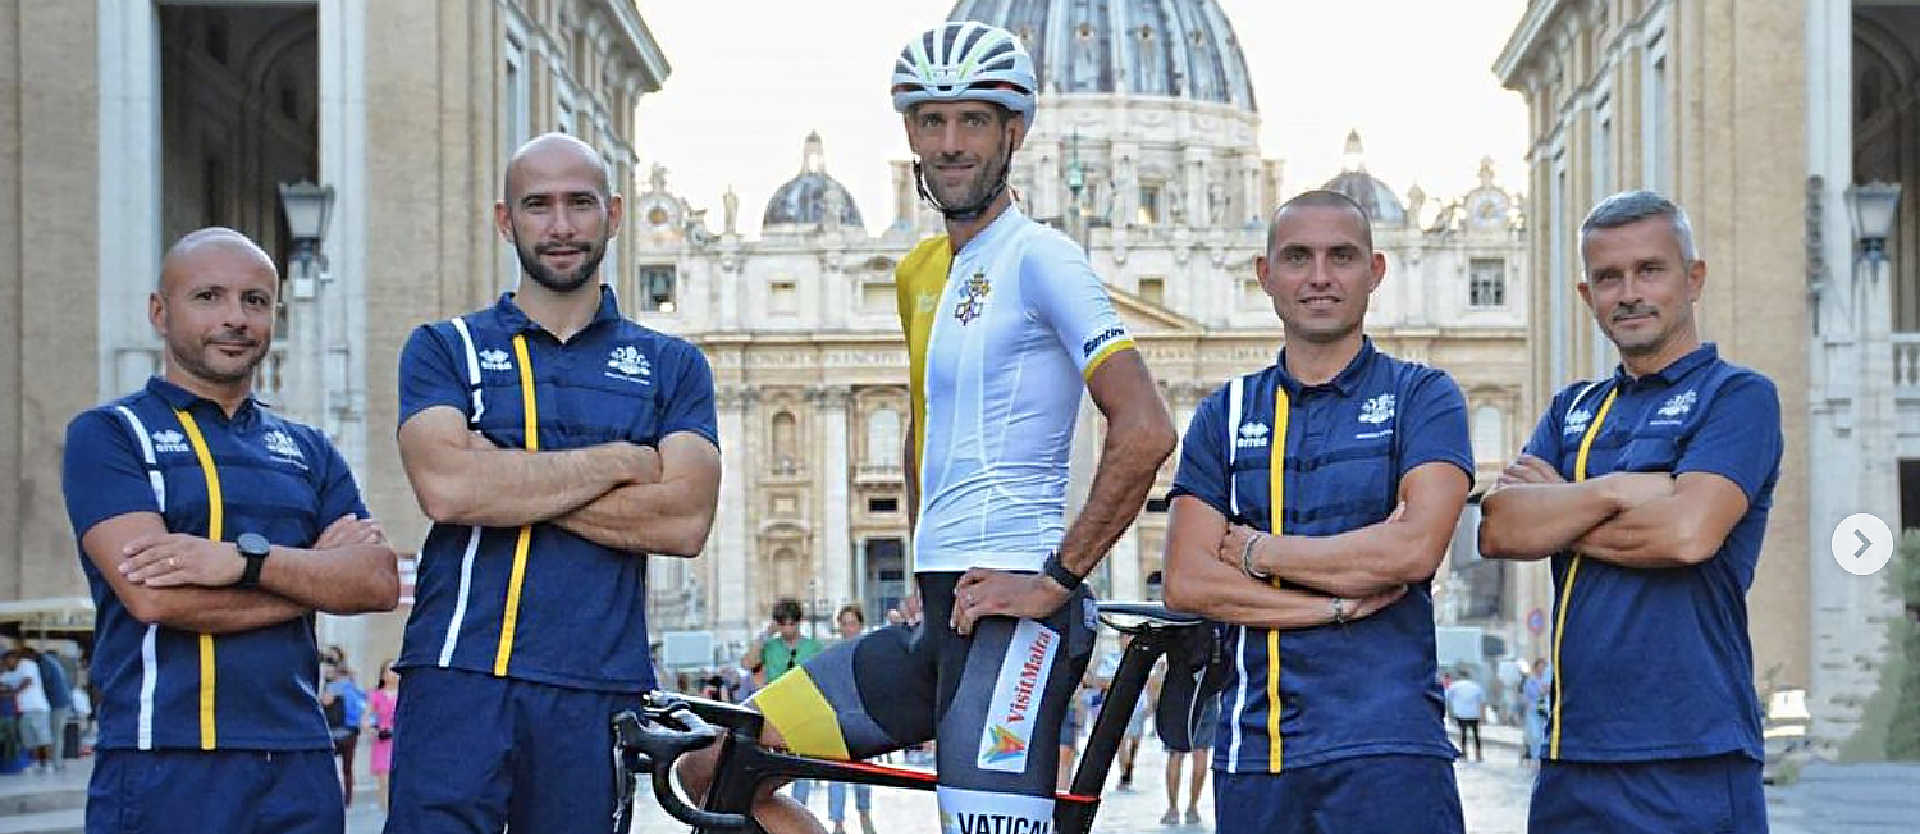 Le coureur néerlandais avec son équipe devant la Place St-Pierre | Instagram Valerio Agnoli